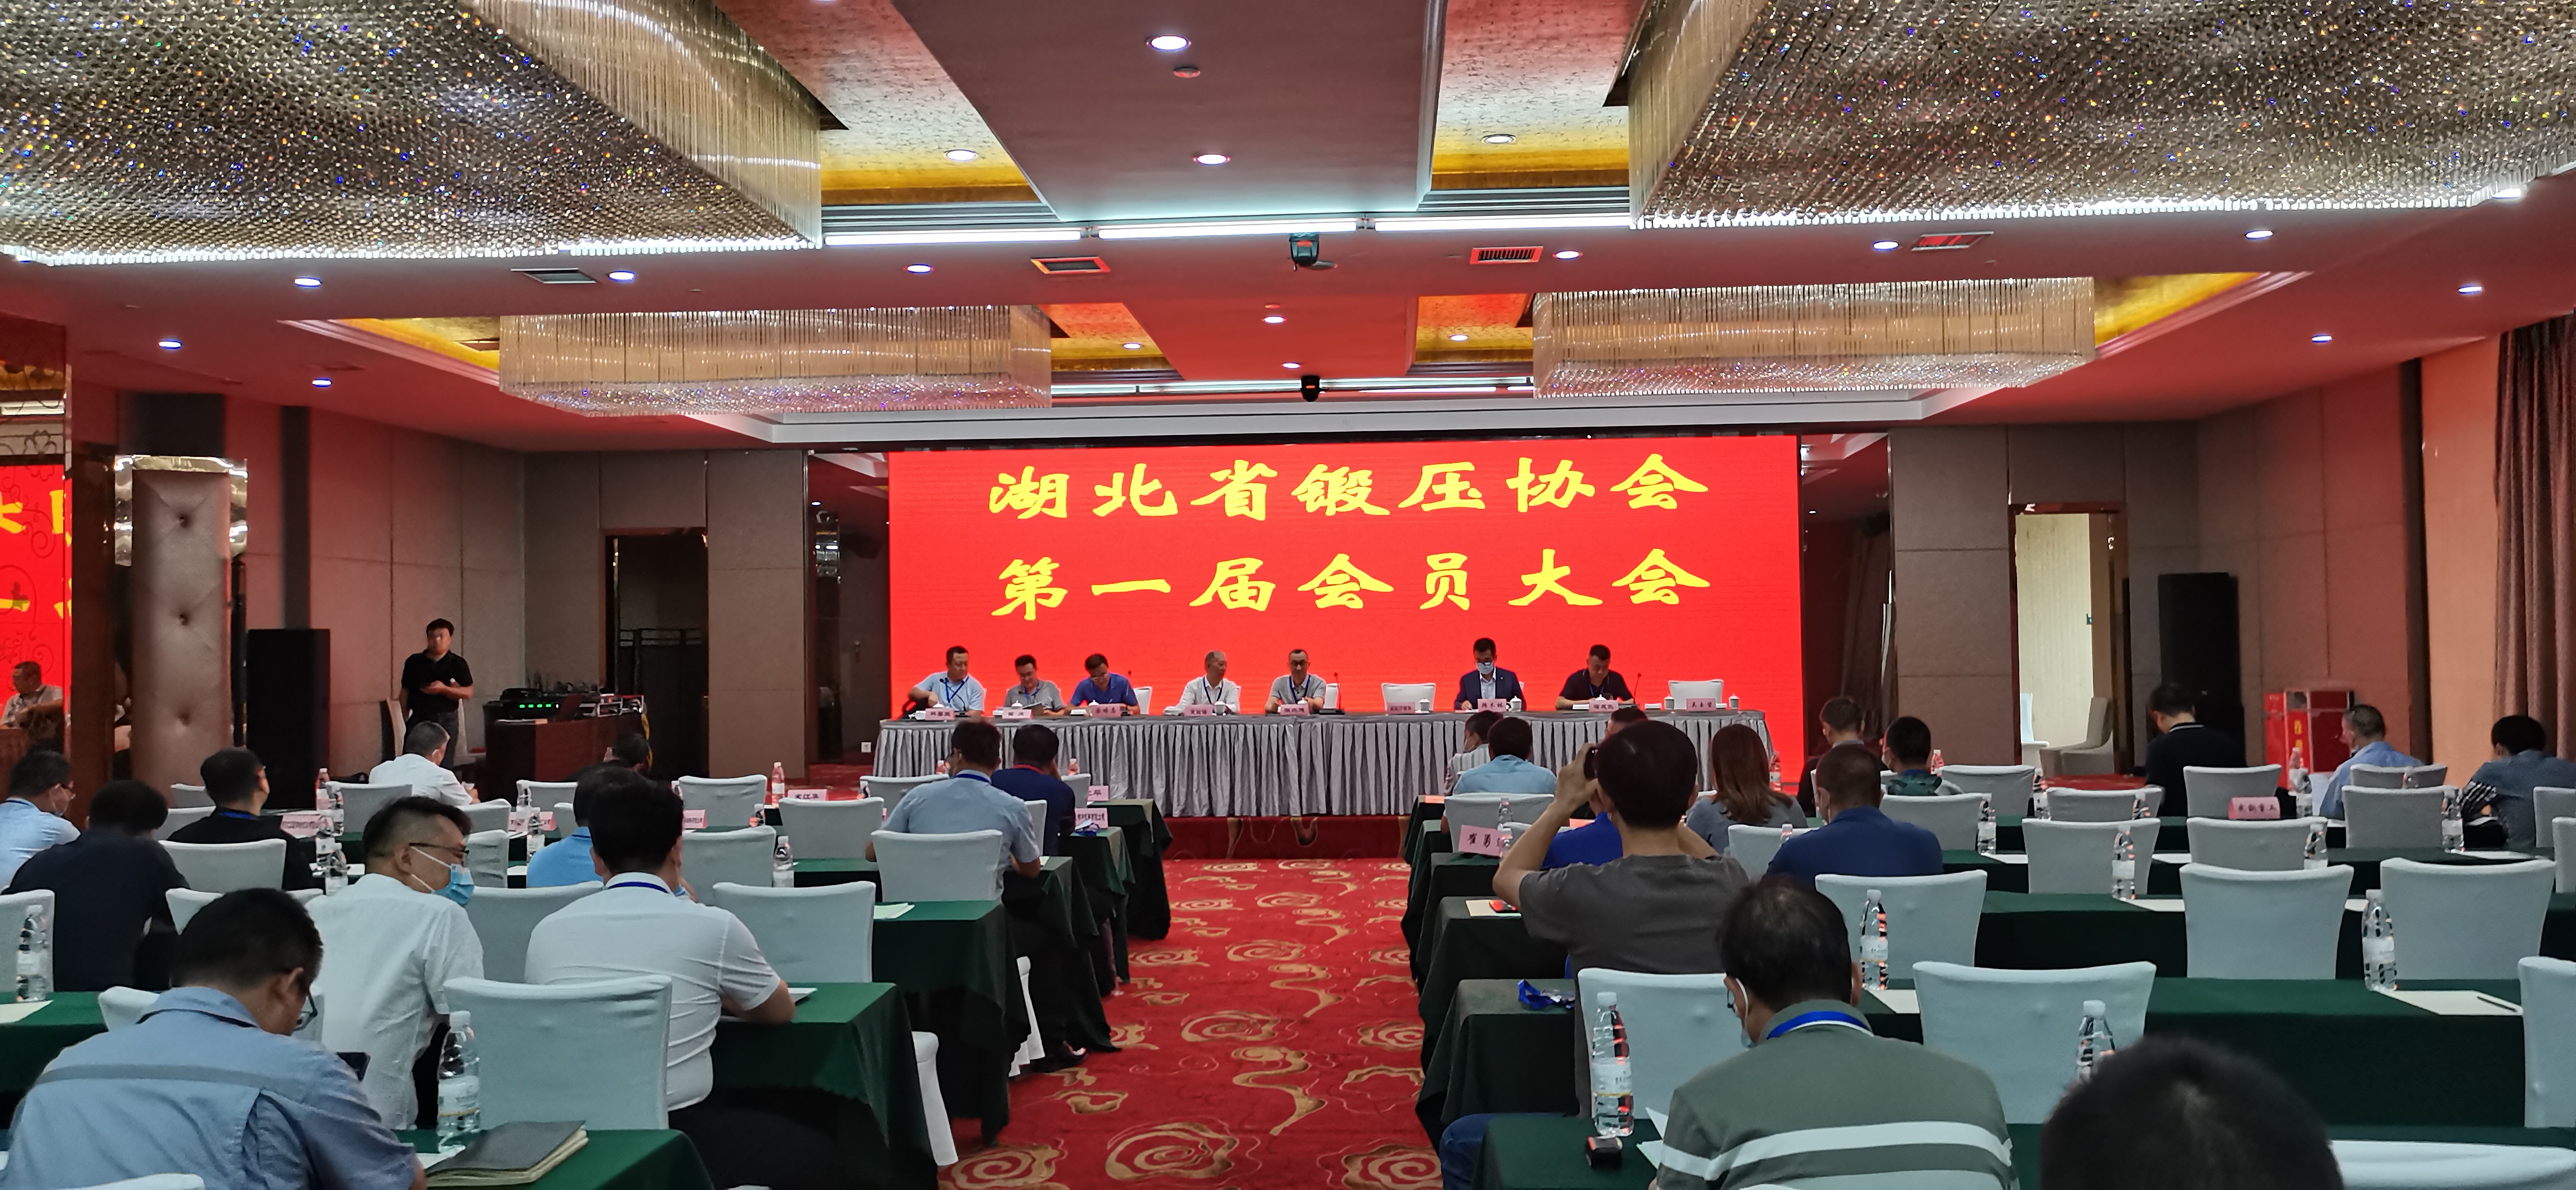 祝贺湖北省锻压协会第一届会员大会暨成立大会在武汉胜利召开！